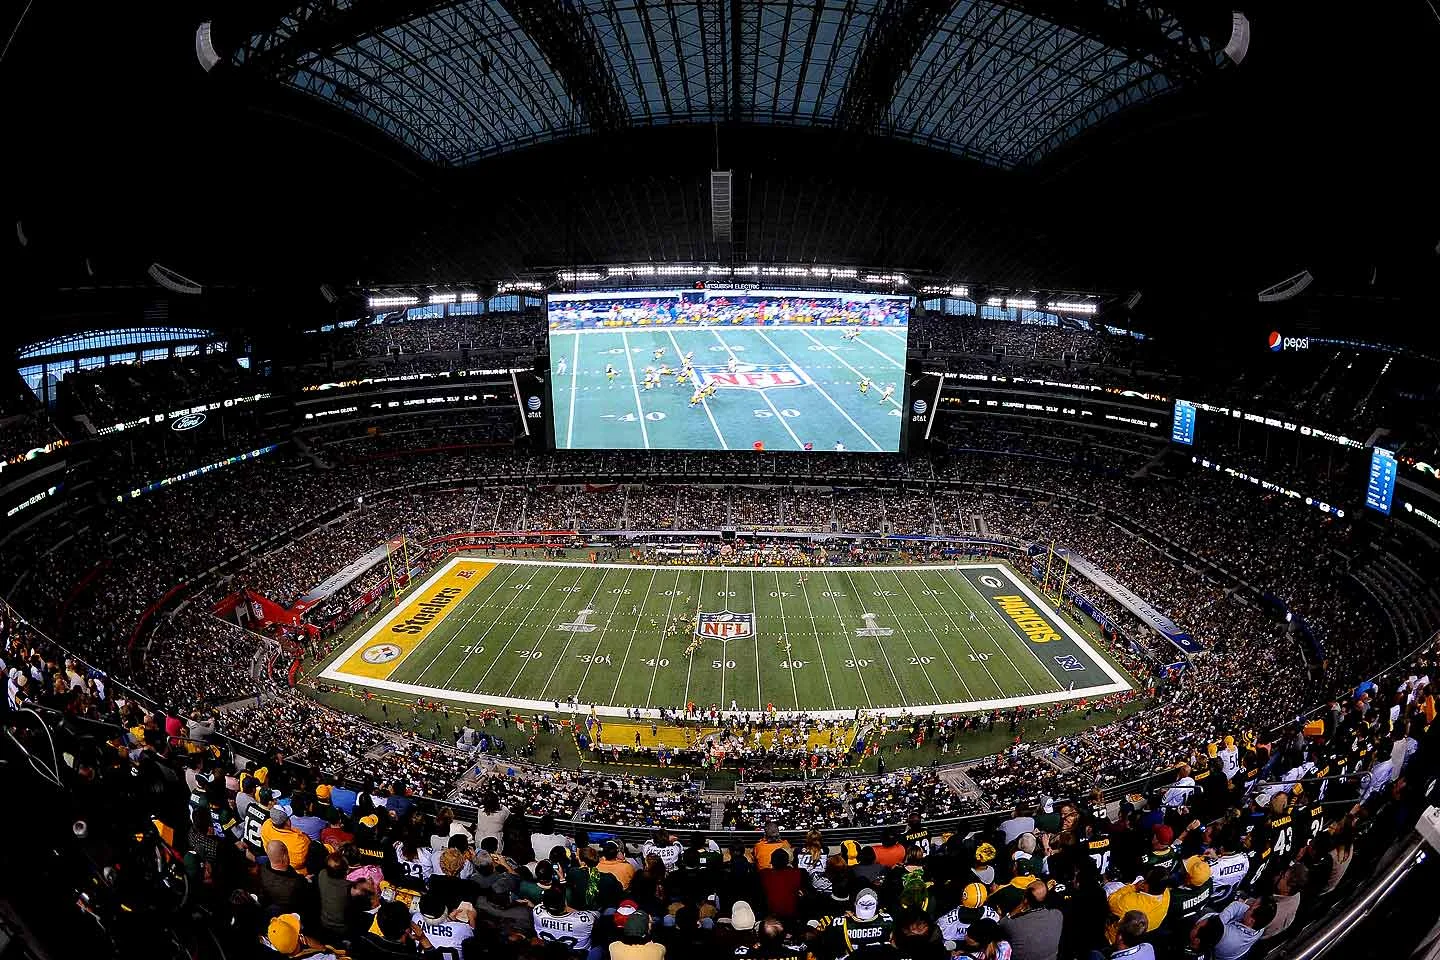 _Суммарная аудитория легендарного Super Bowl у телевизоров, на стадионе и в Сети превышает сто миллионов зрителей. И каждый зритель платит._